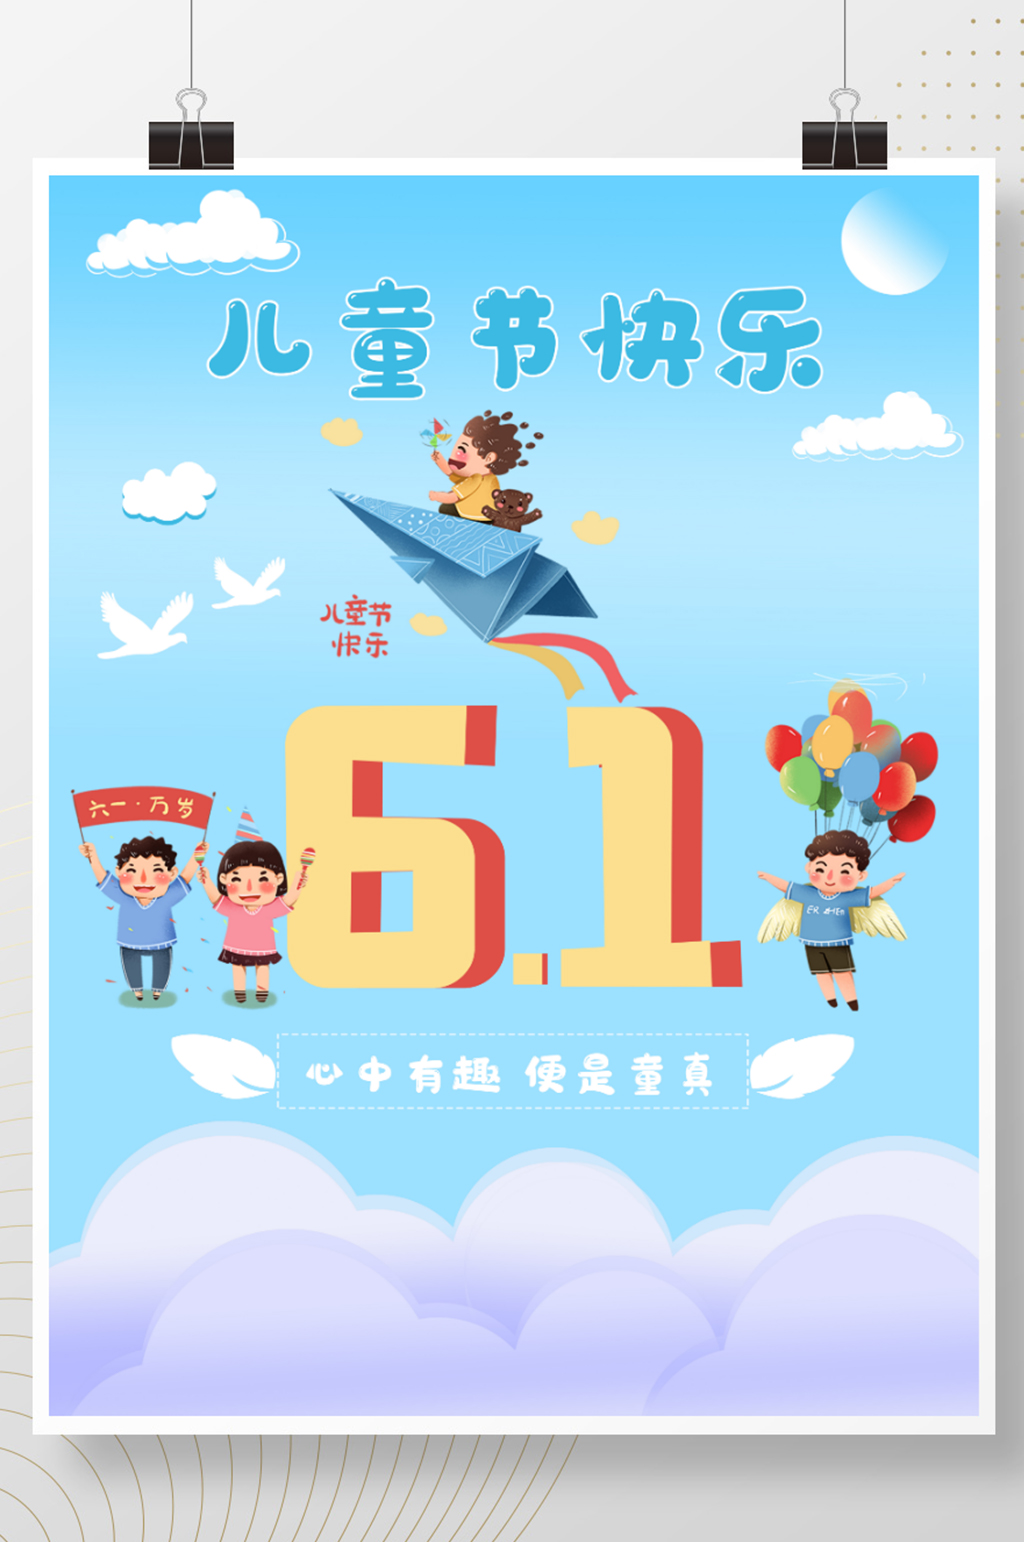 祝福六一国际儿童节快乐卡通海报